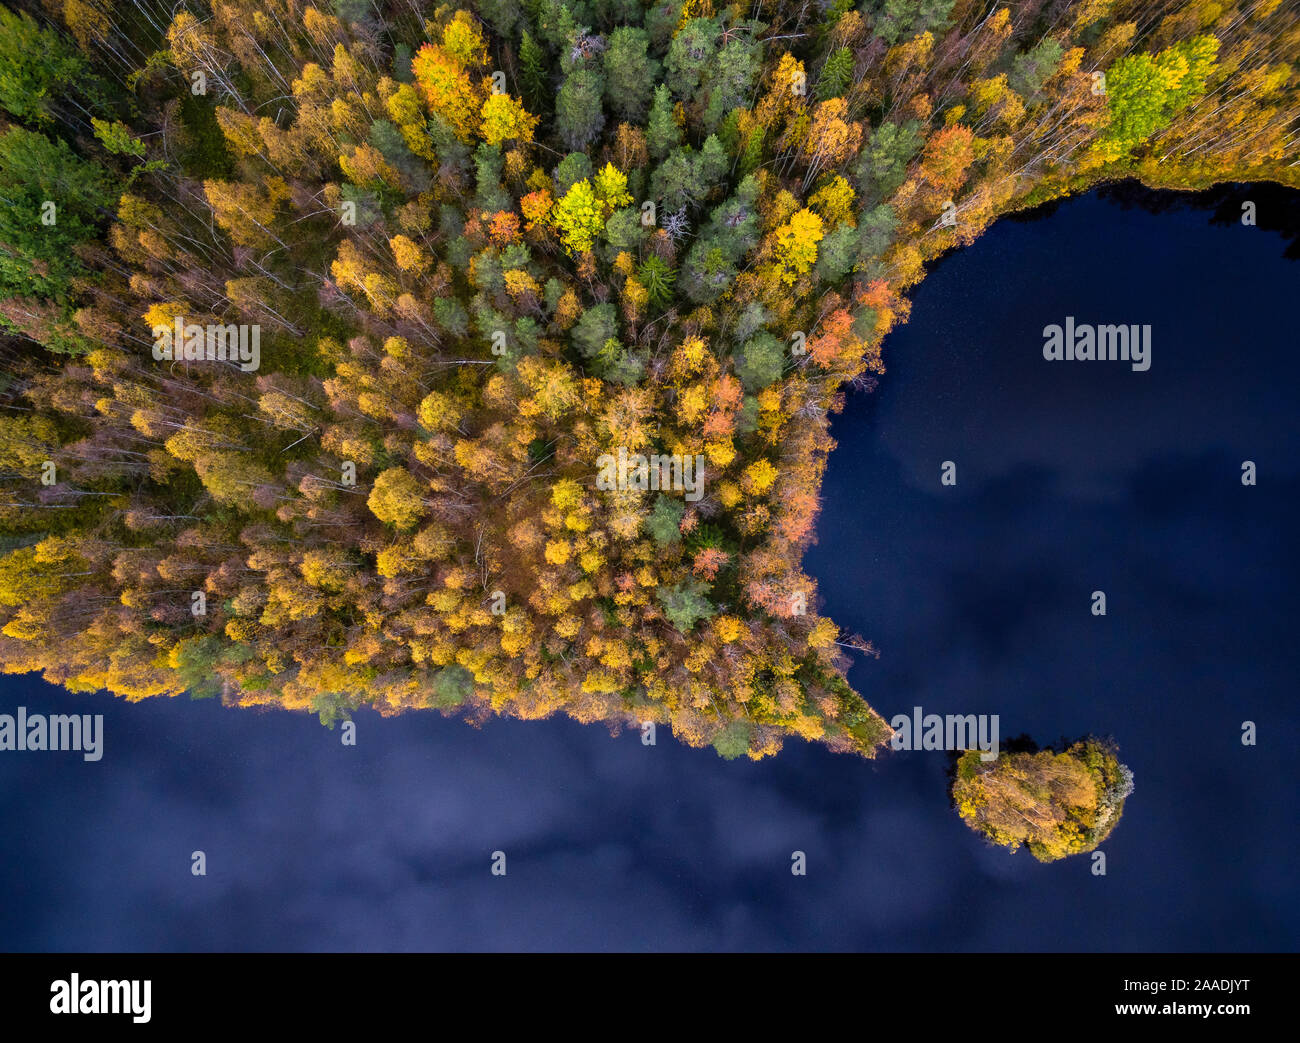 Taiga forest von Luft, Finnland fotografiert, September 2016. Hoch gelobt in der GDT Europäischer Naturfotograf des Jahres 2017 und achtbare Erwähnung in der Schönheit der Natur Kategorie des Siena International Photography Awards 2017. Stockfoto